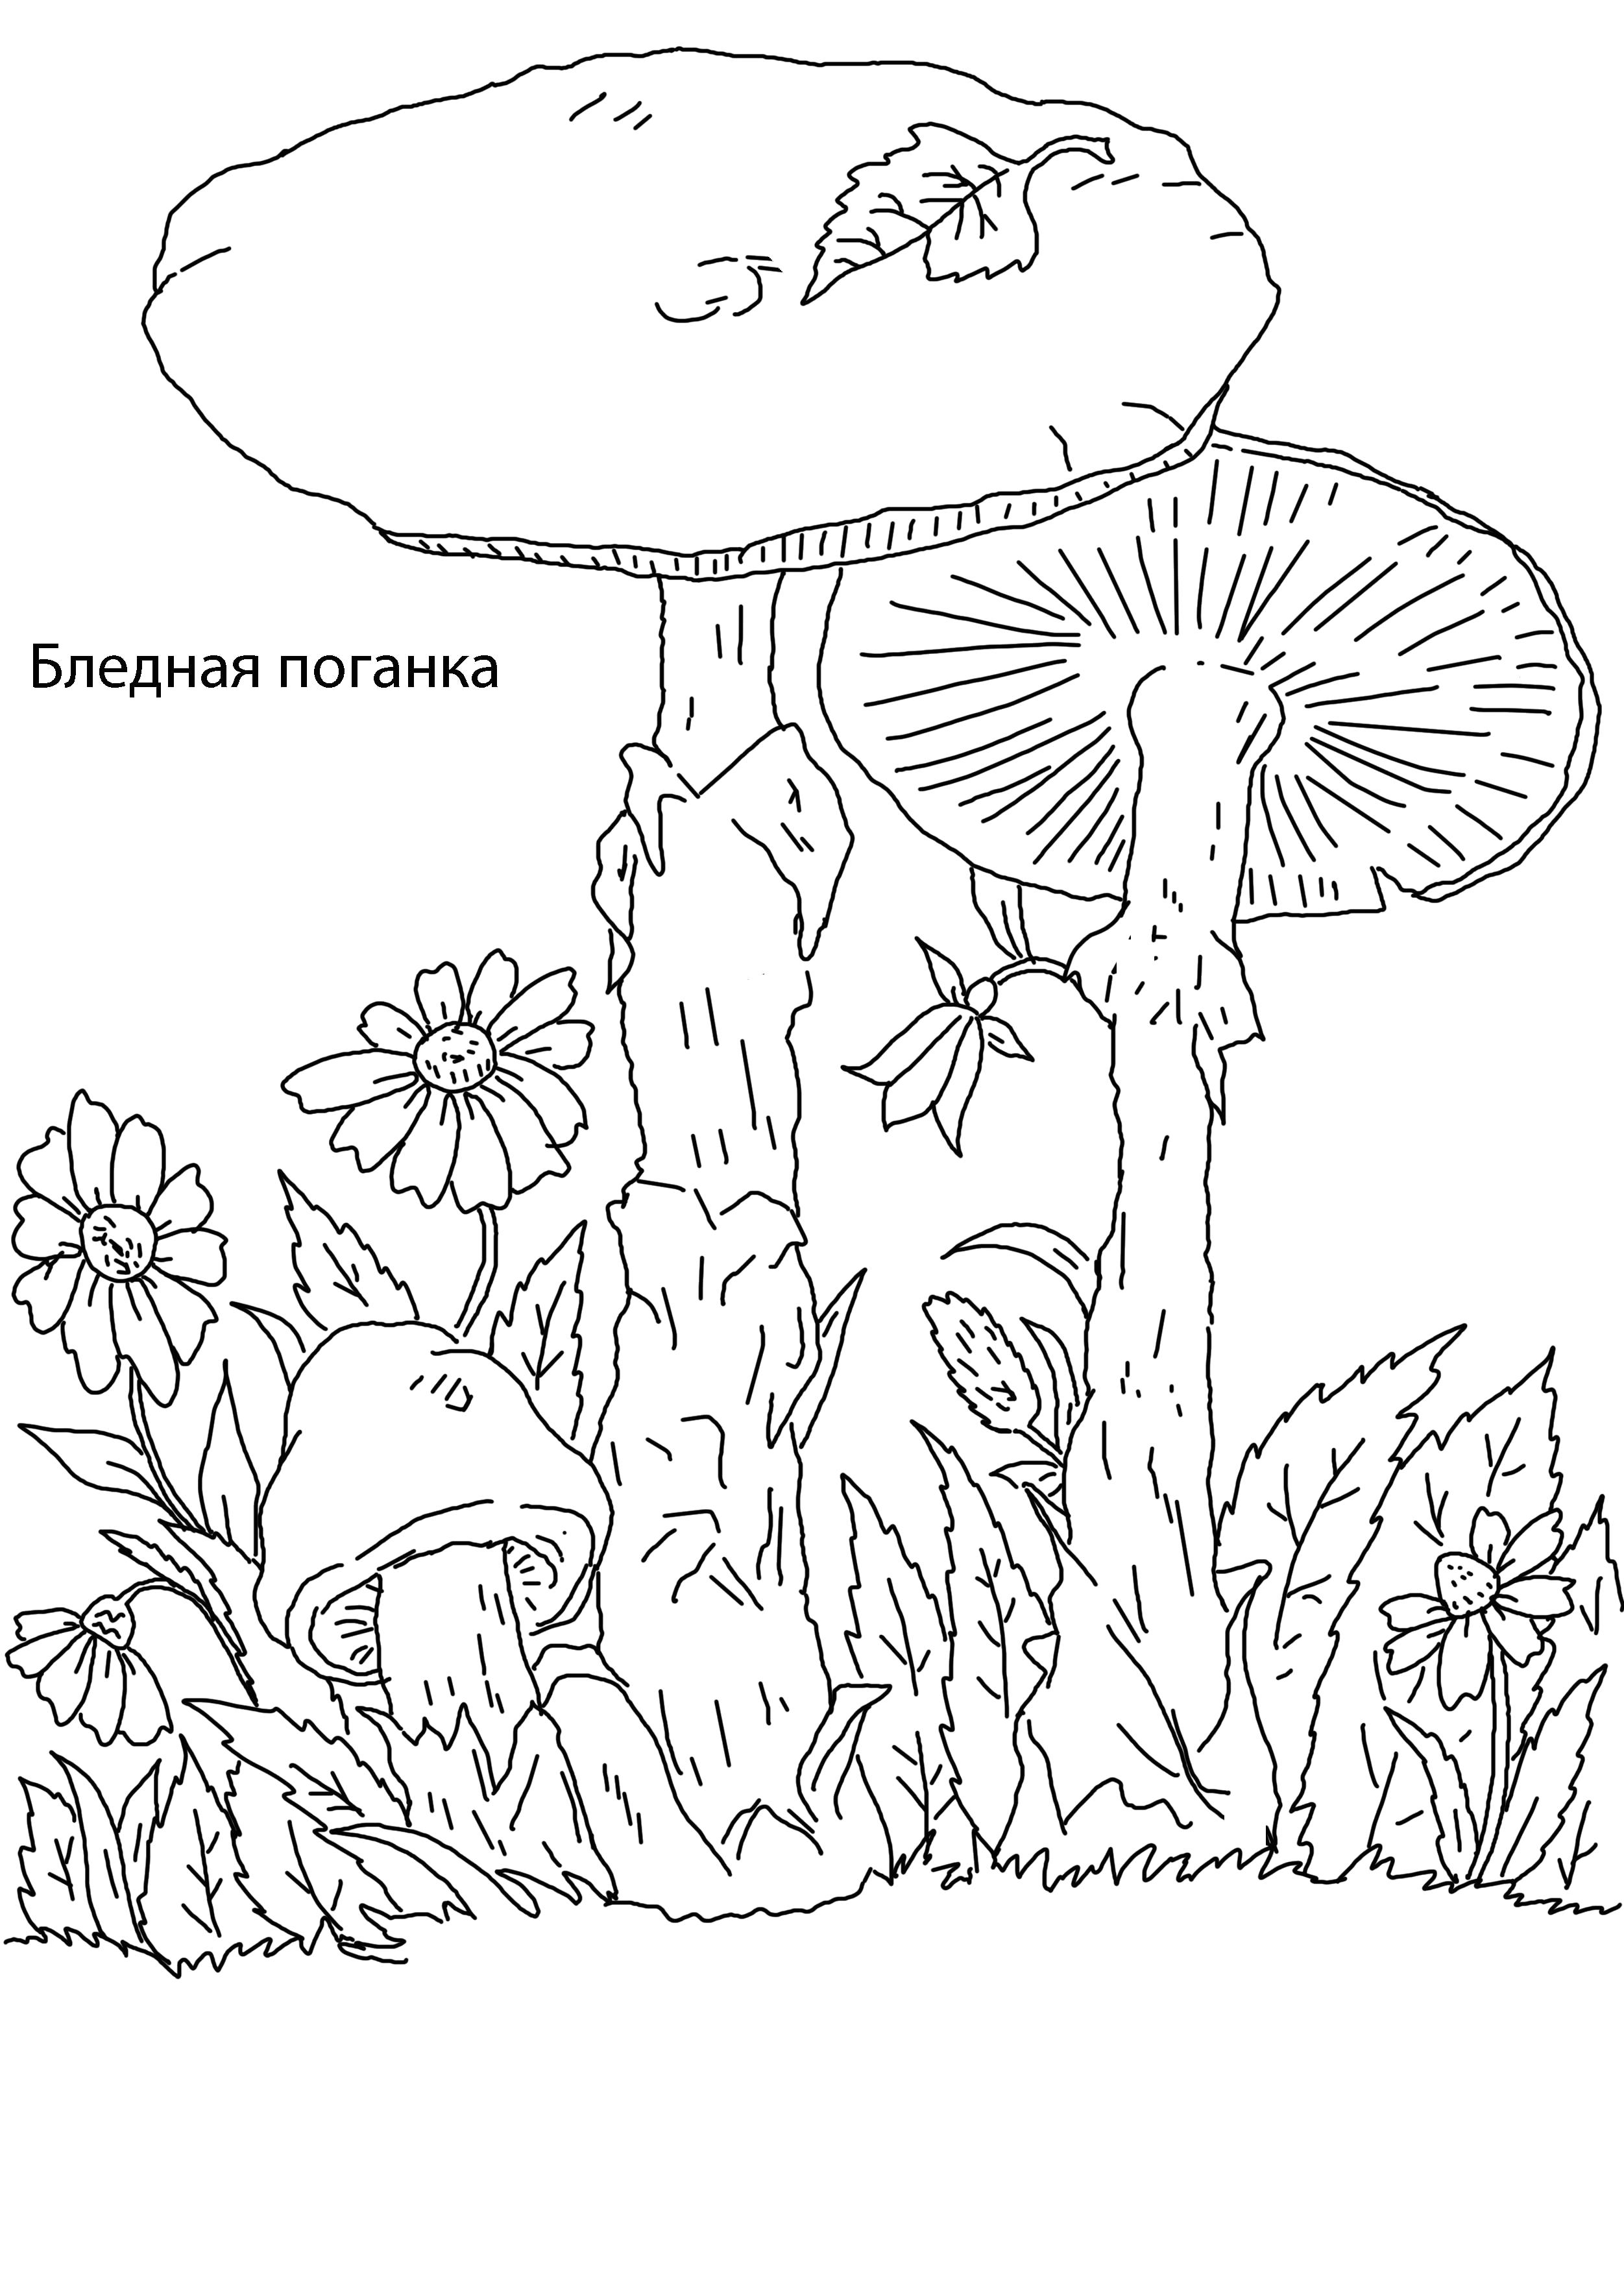 Деление по внешнему виду грибов